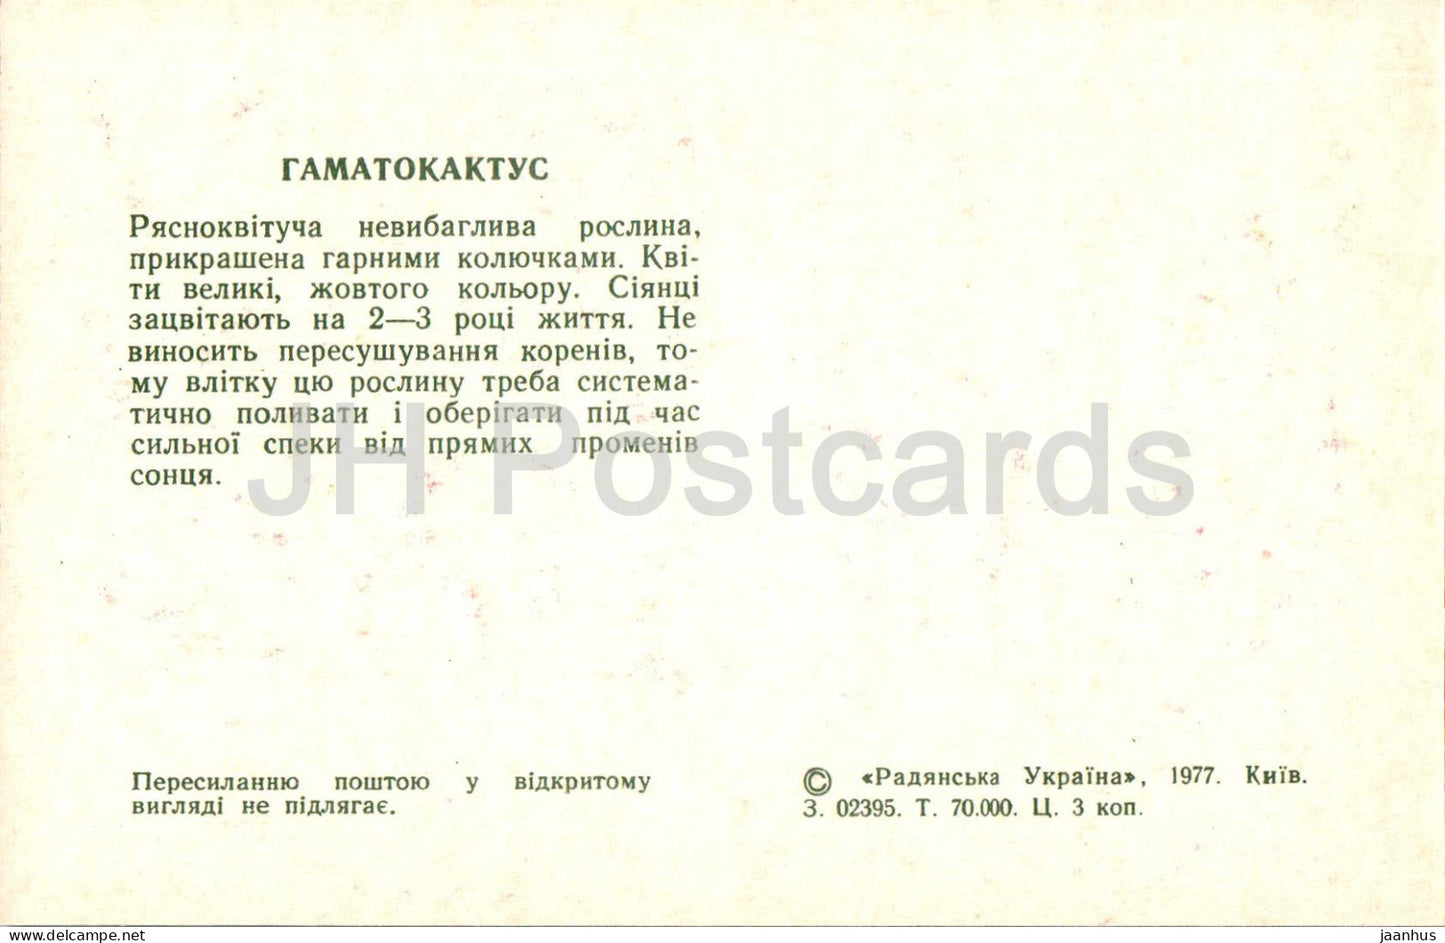 Hamatocactus - Kakteen - Kaktus - Blumen - 1977 - Ukraine UdSSR - unbenutzt 